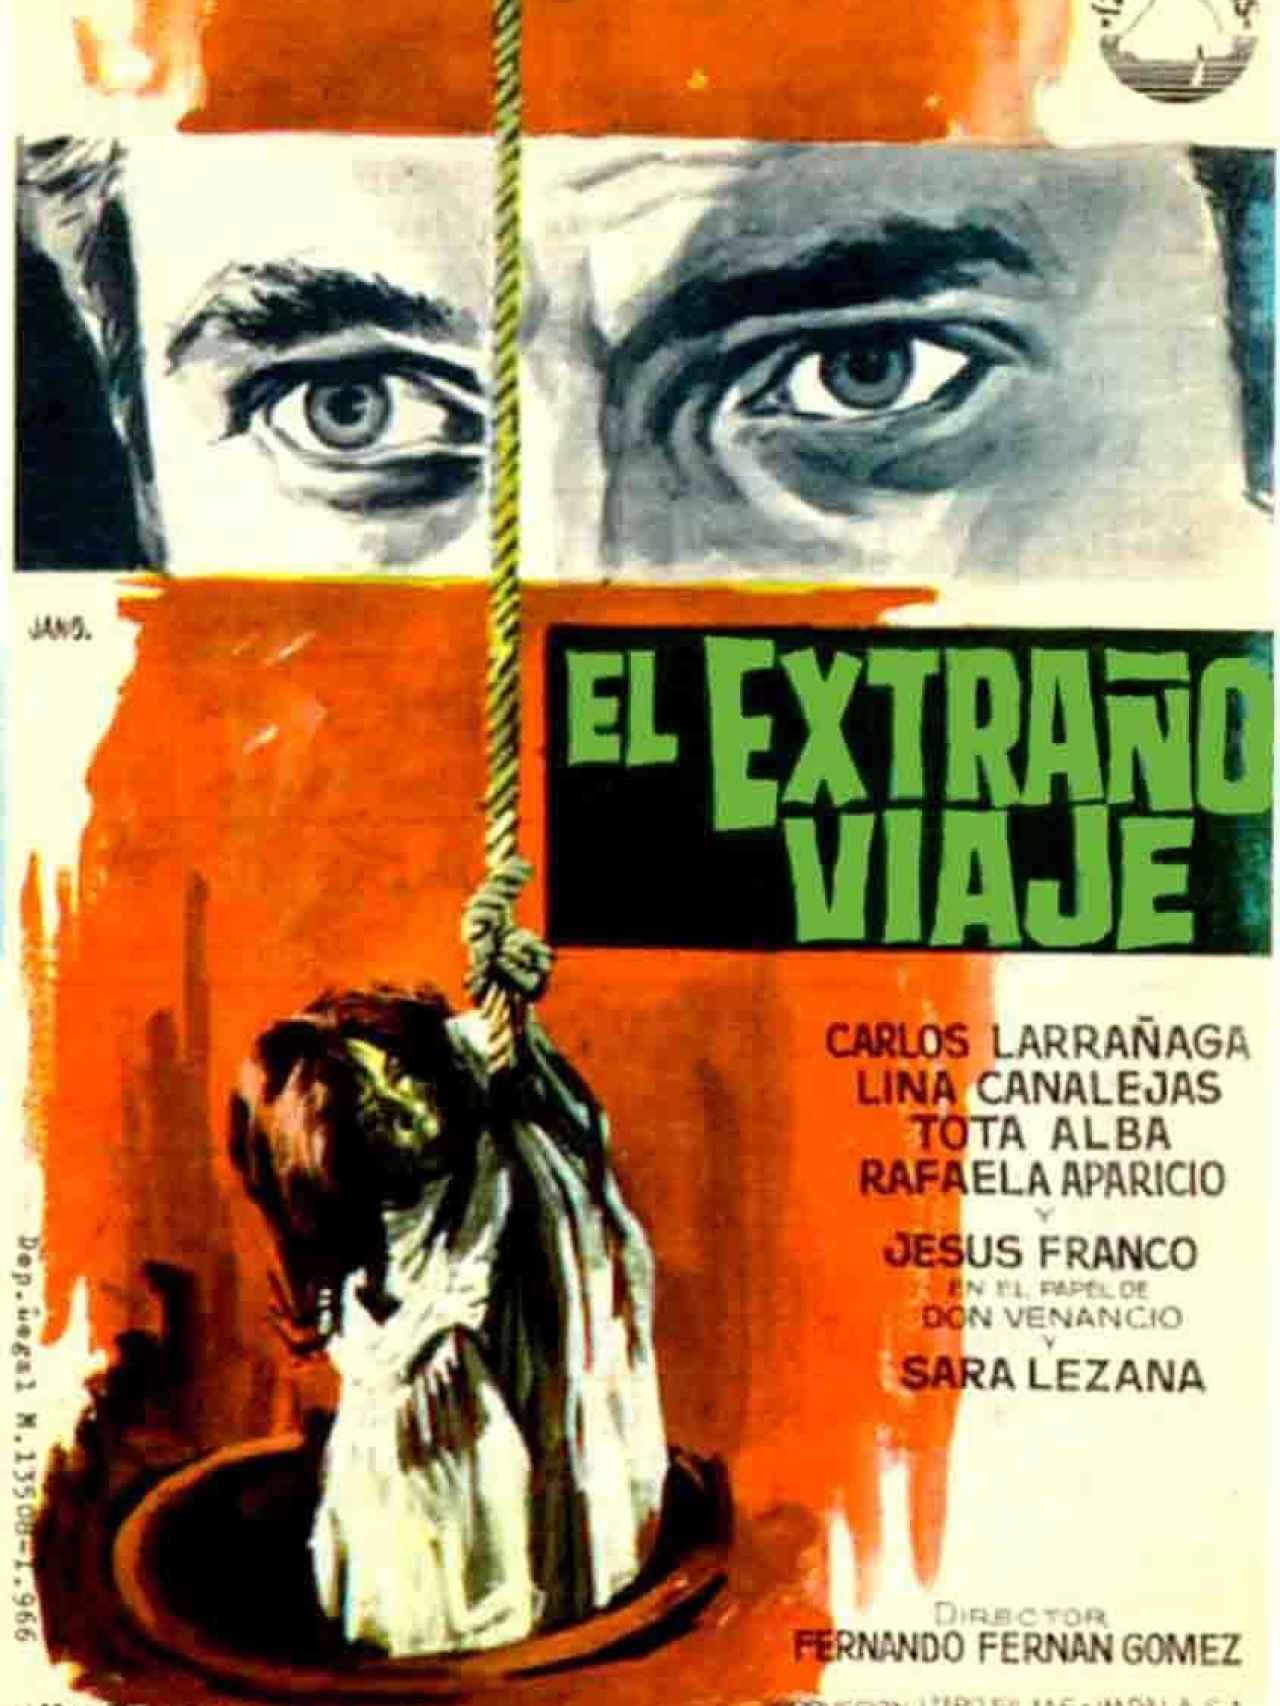 El extraño viaje es una película española de 1964